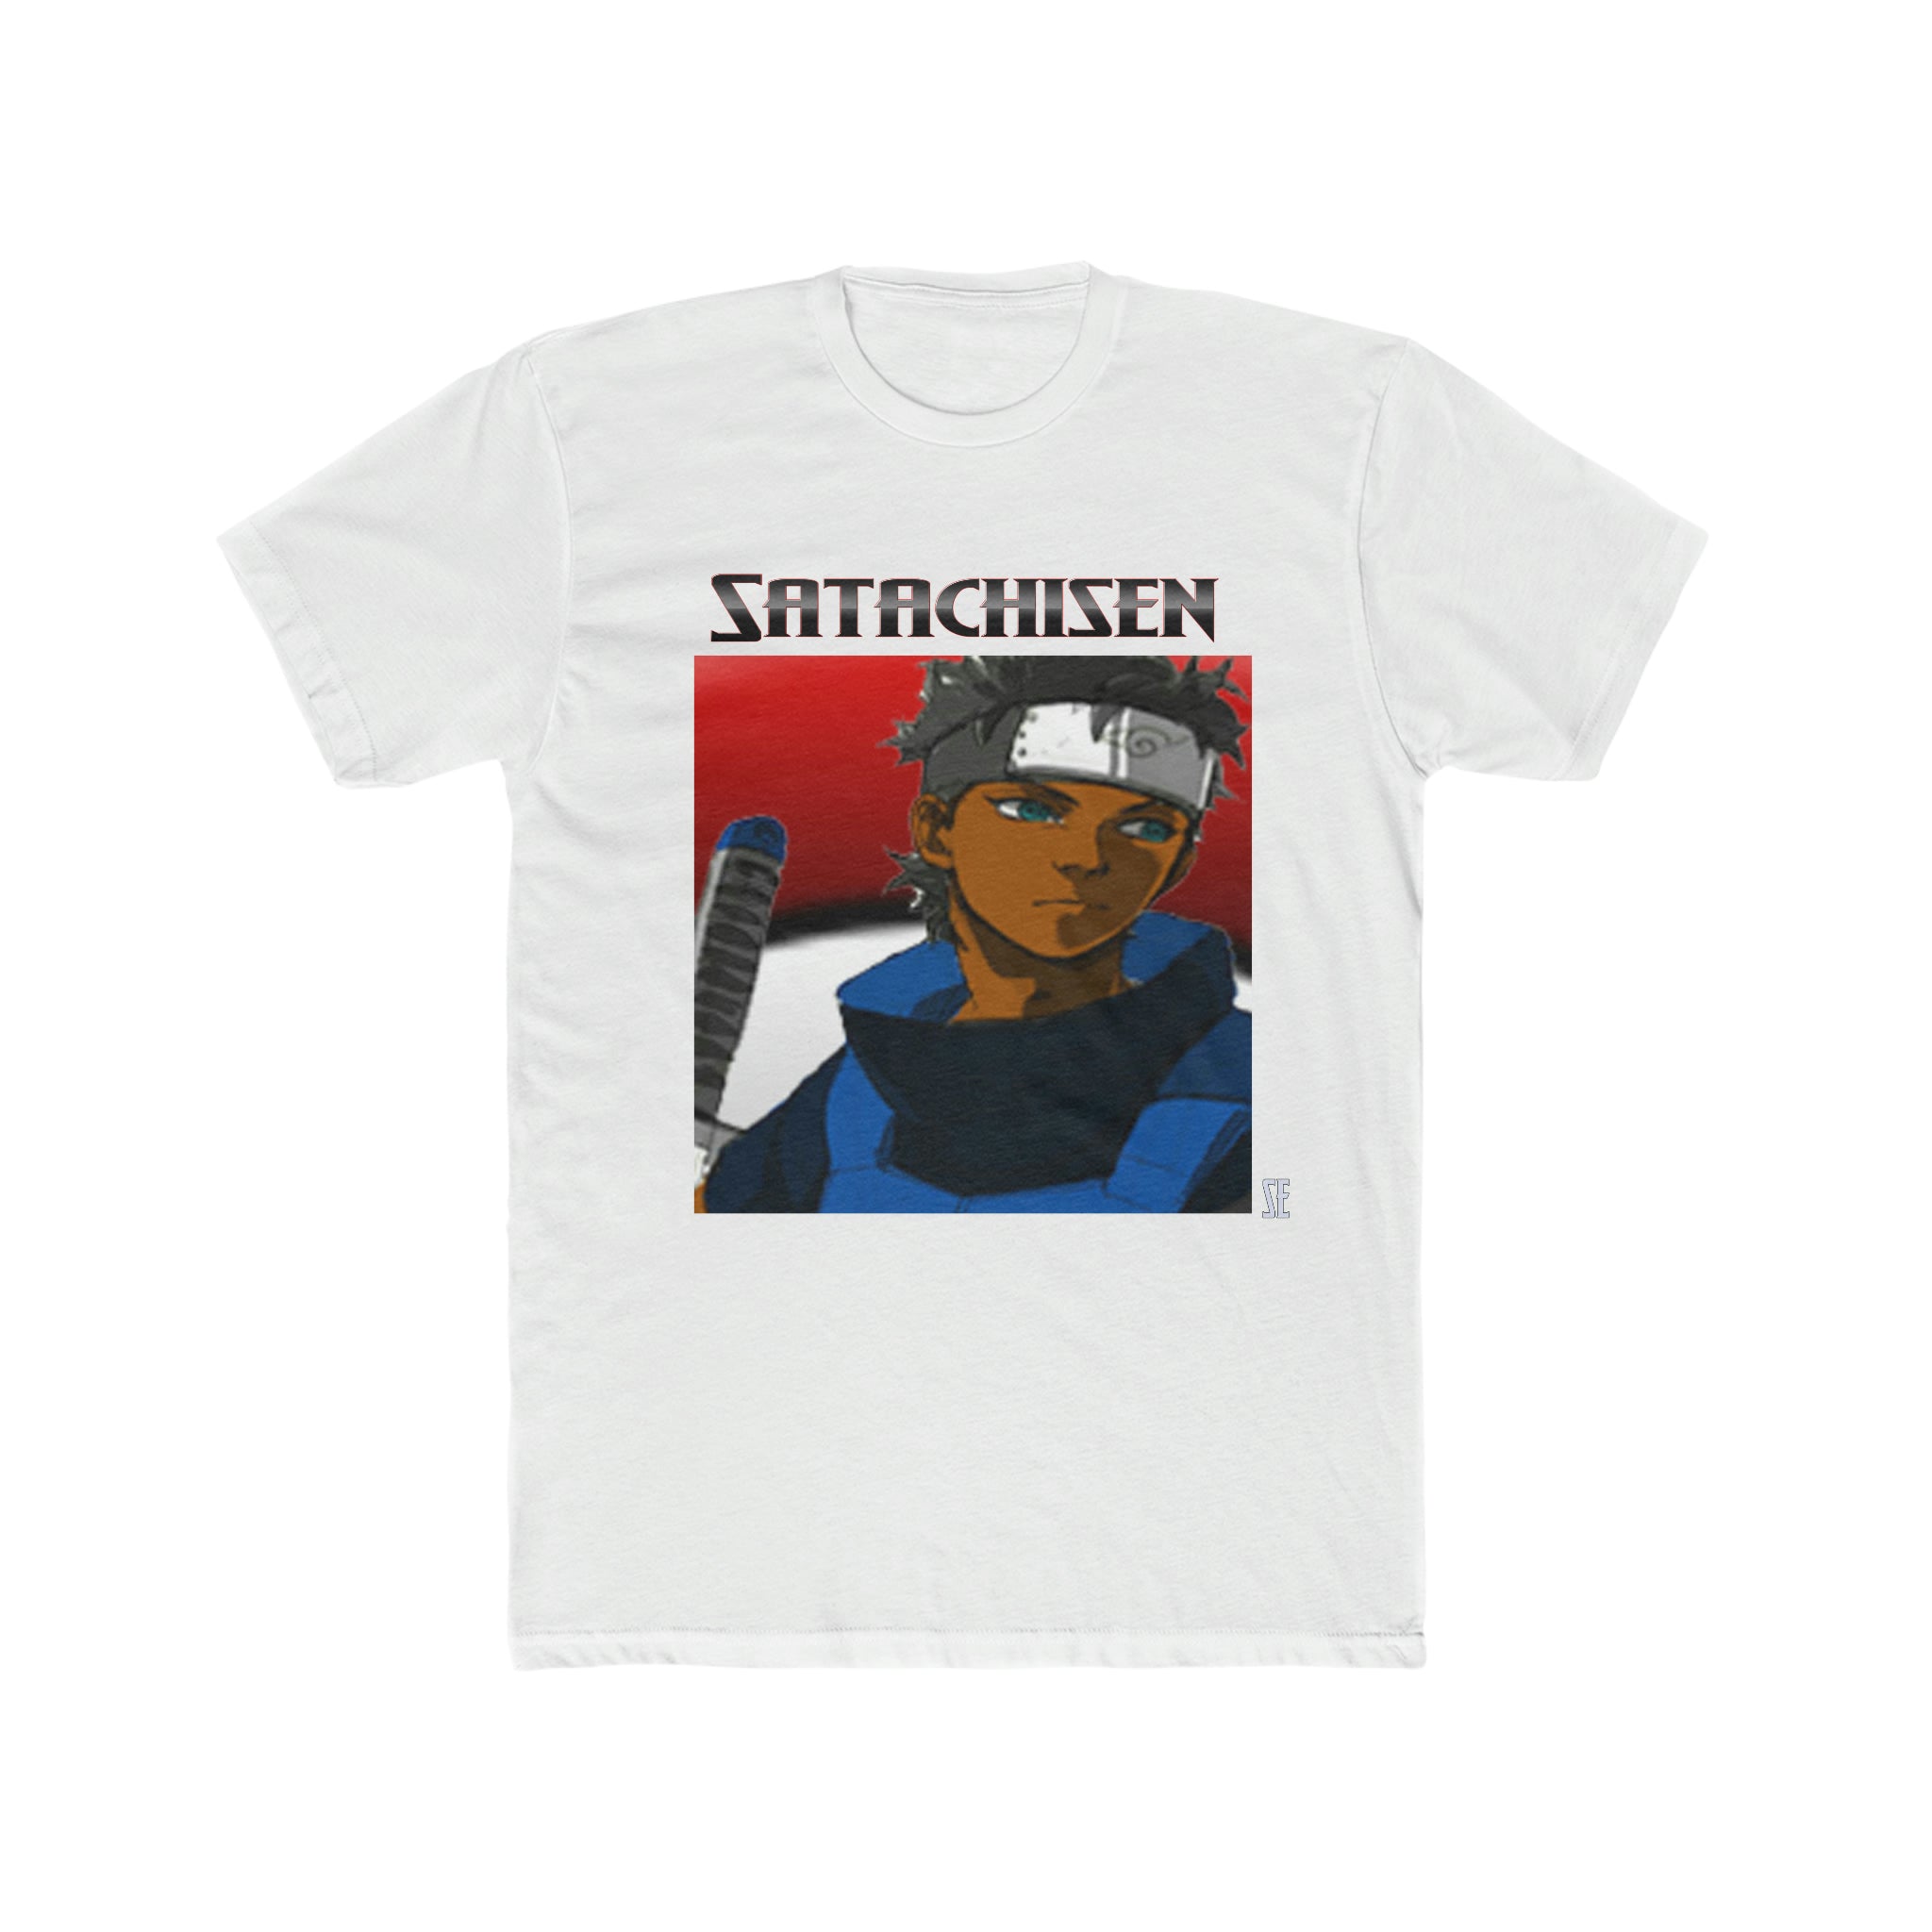 Satachisen Uchiha T-Shirt